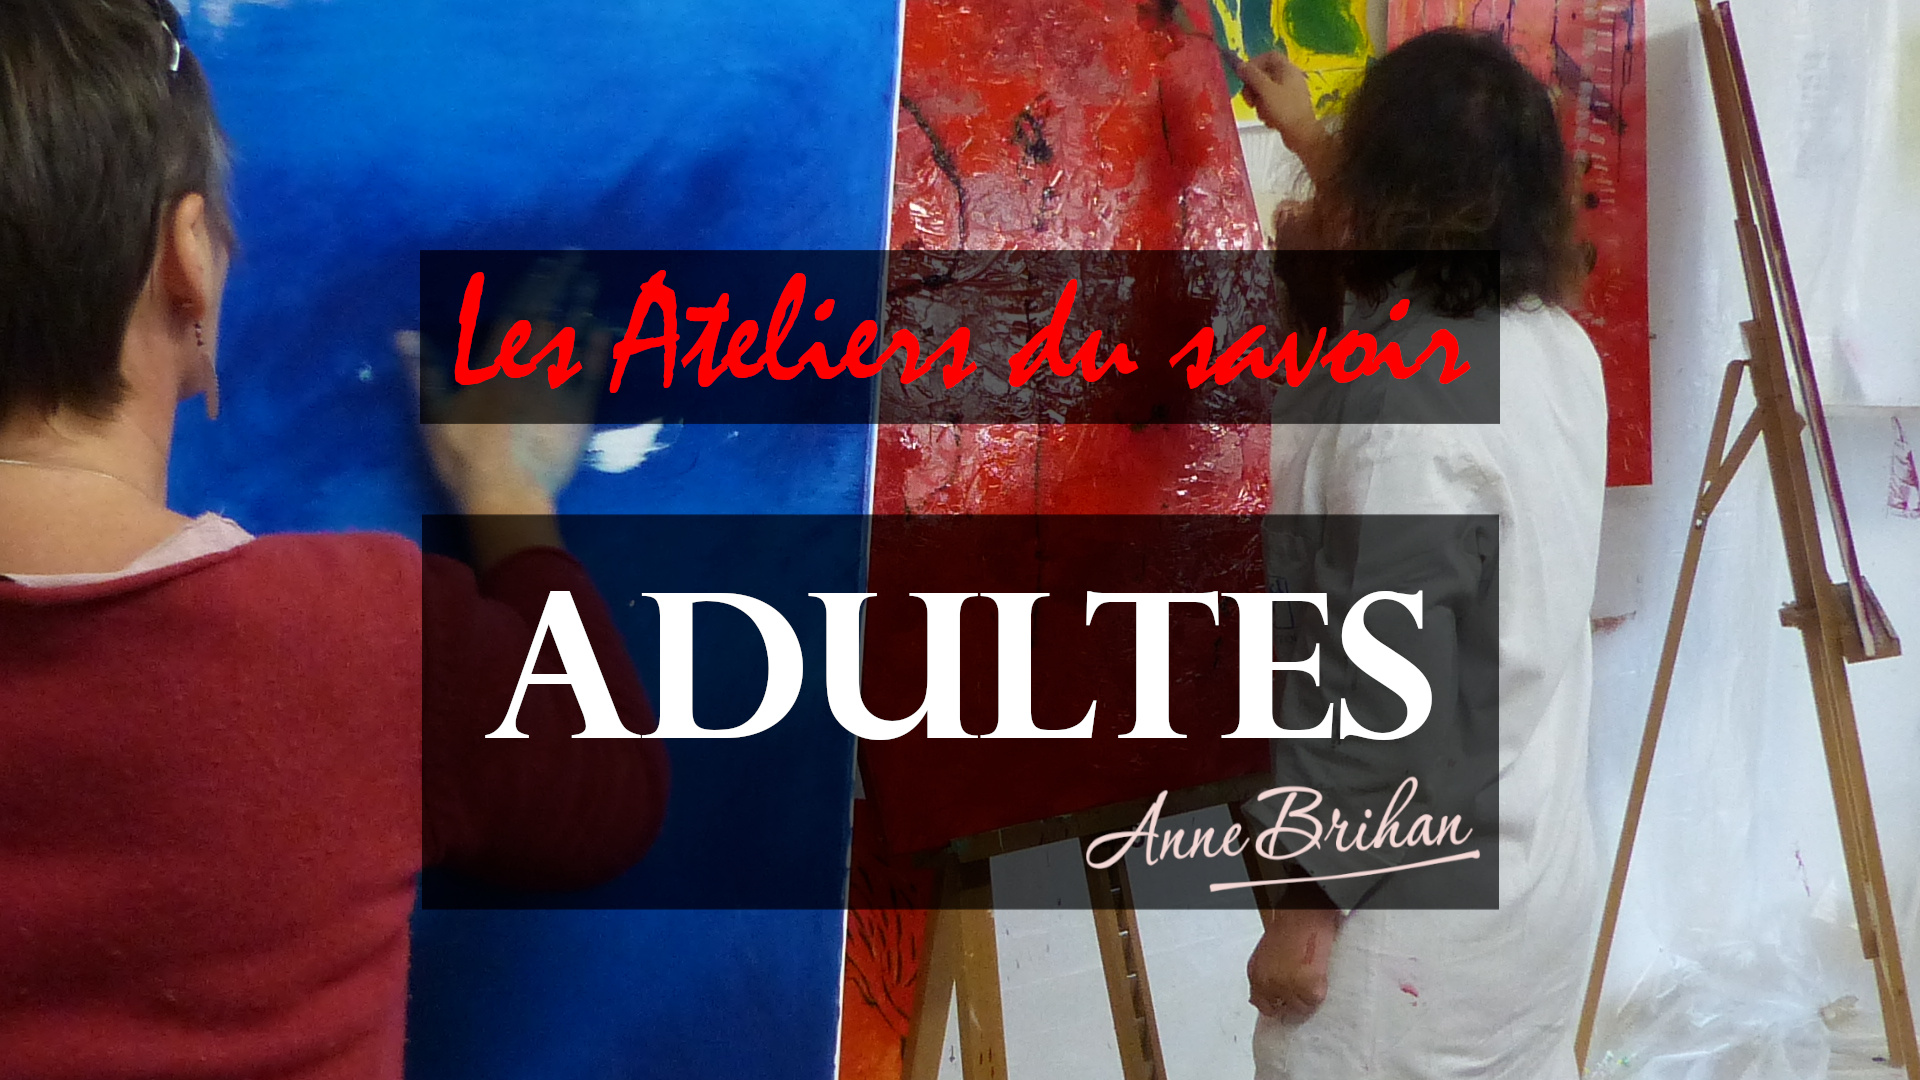 LES-ATELIERS-DU-SAVOIR-ADULTES-ANNE-BRIHAN-ARTISTE-PEINTRE-LANDES-AQUITAINE-FRANCE